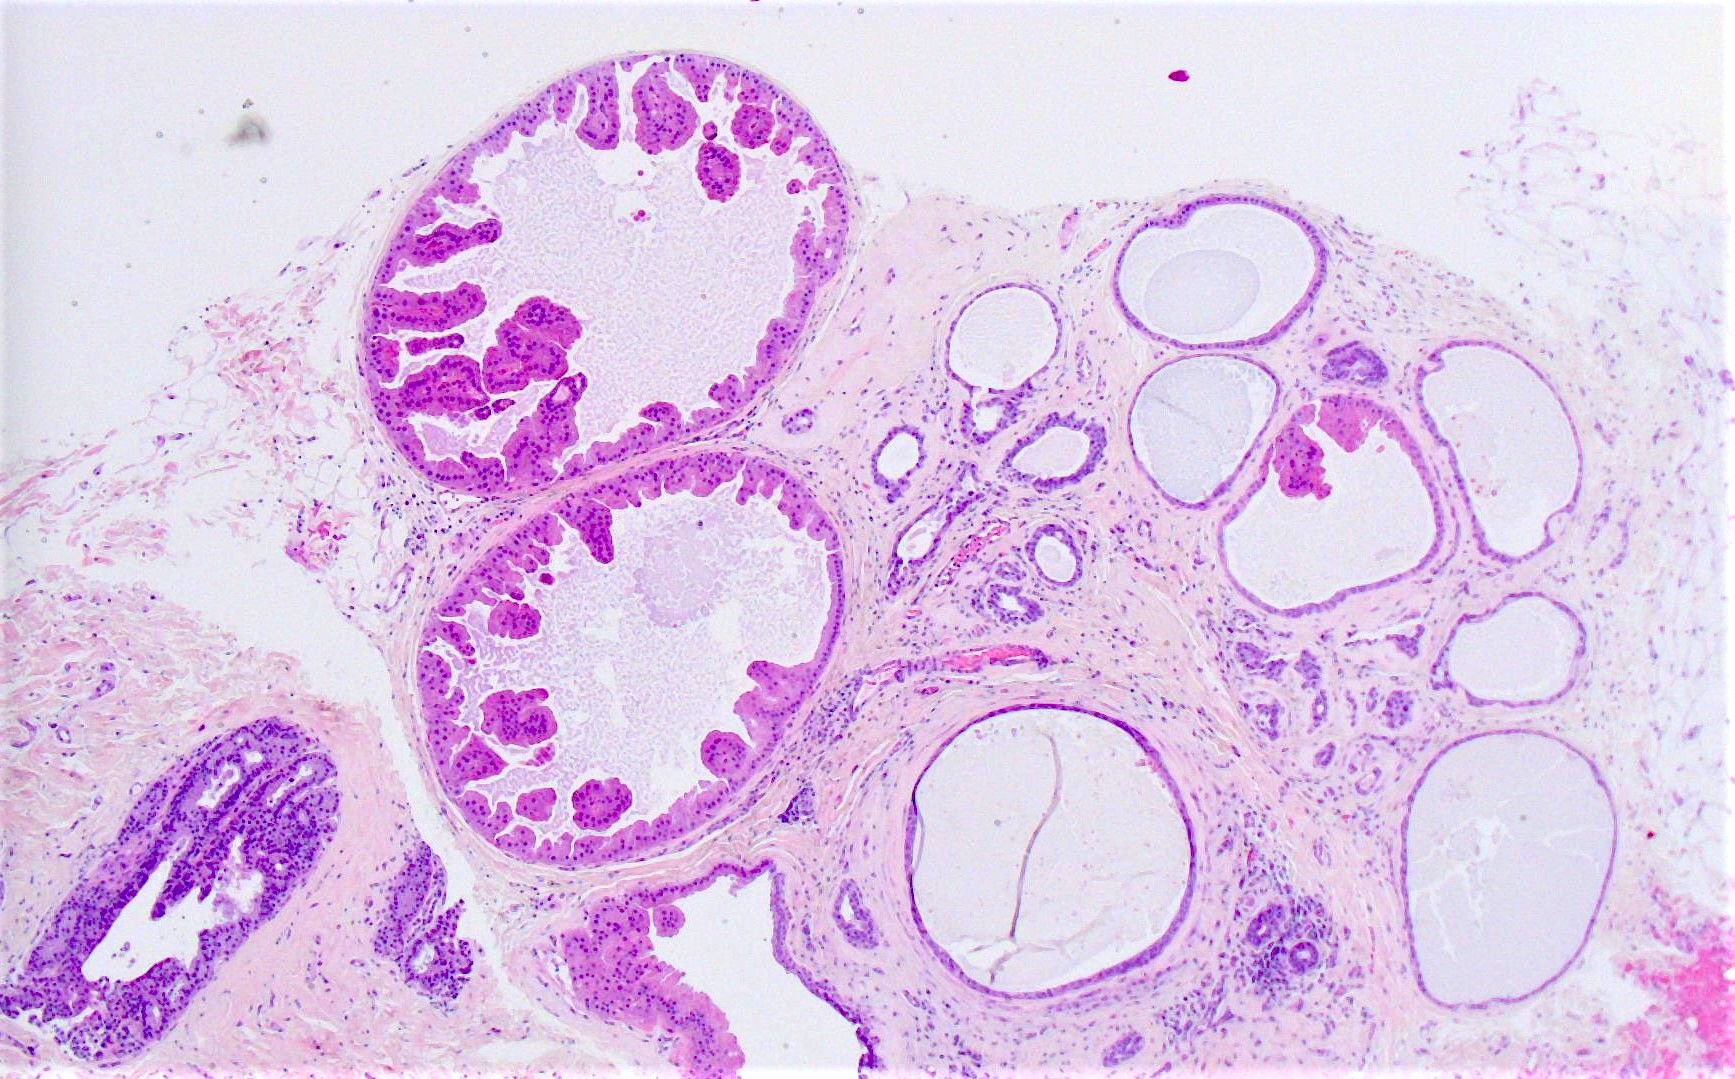 Papilloma with apocrine metaplasia, Papilloma with apocrine metaplasia